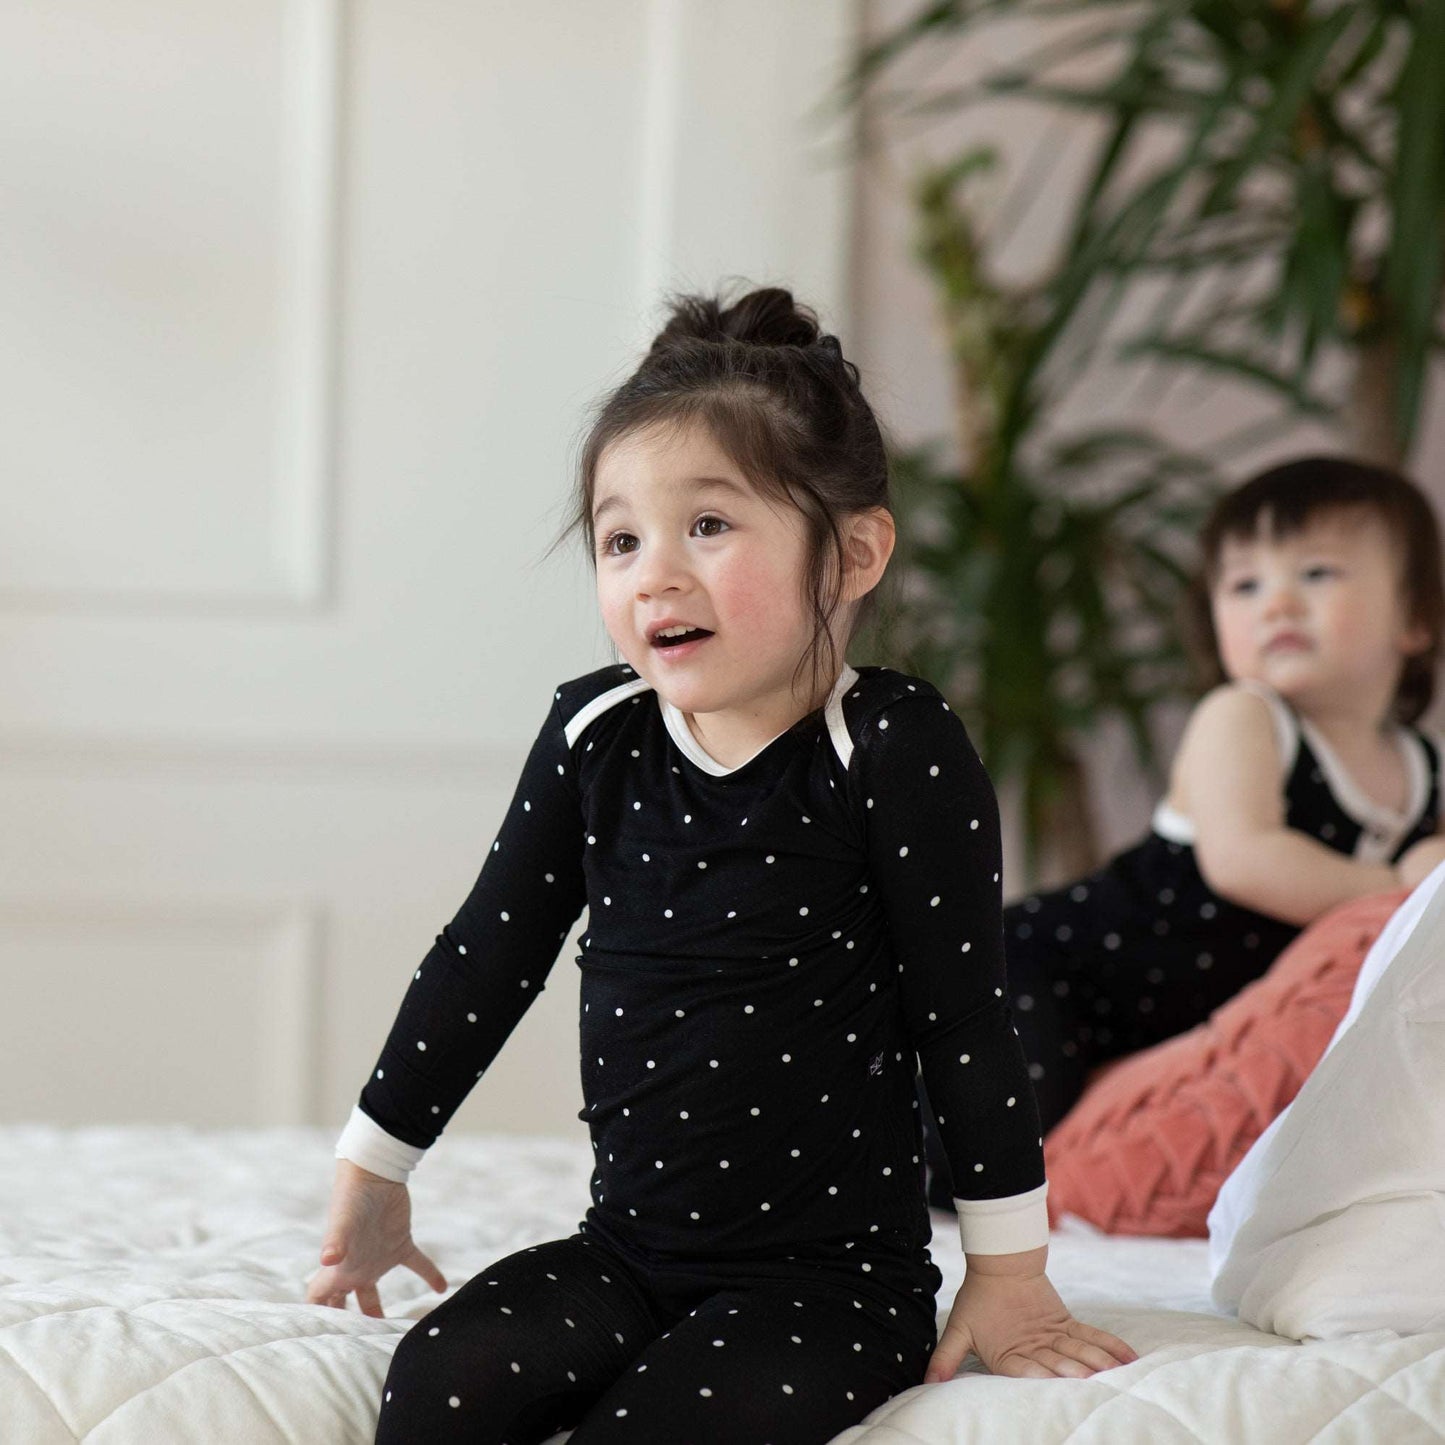 Black Polkadot Bamboo Two-Piece Pajamas - Peregrine Kidswear - 2 Piece Pajamas - 12-18M